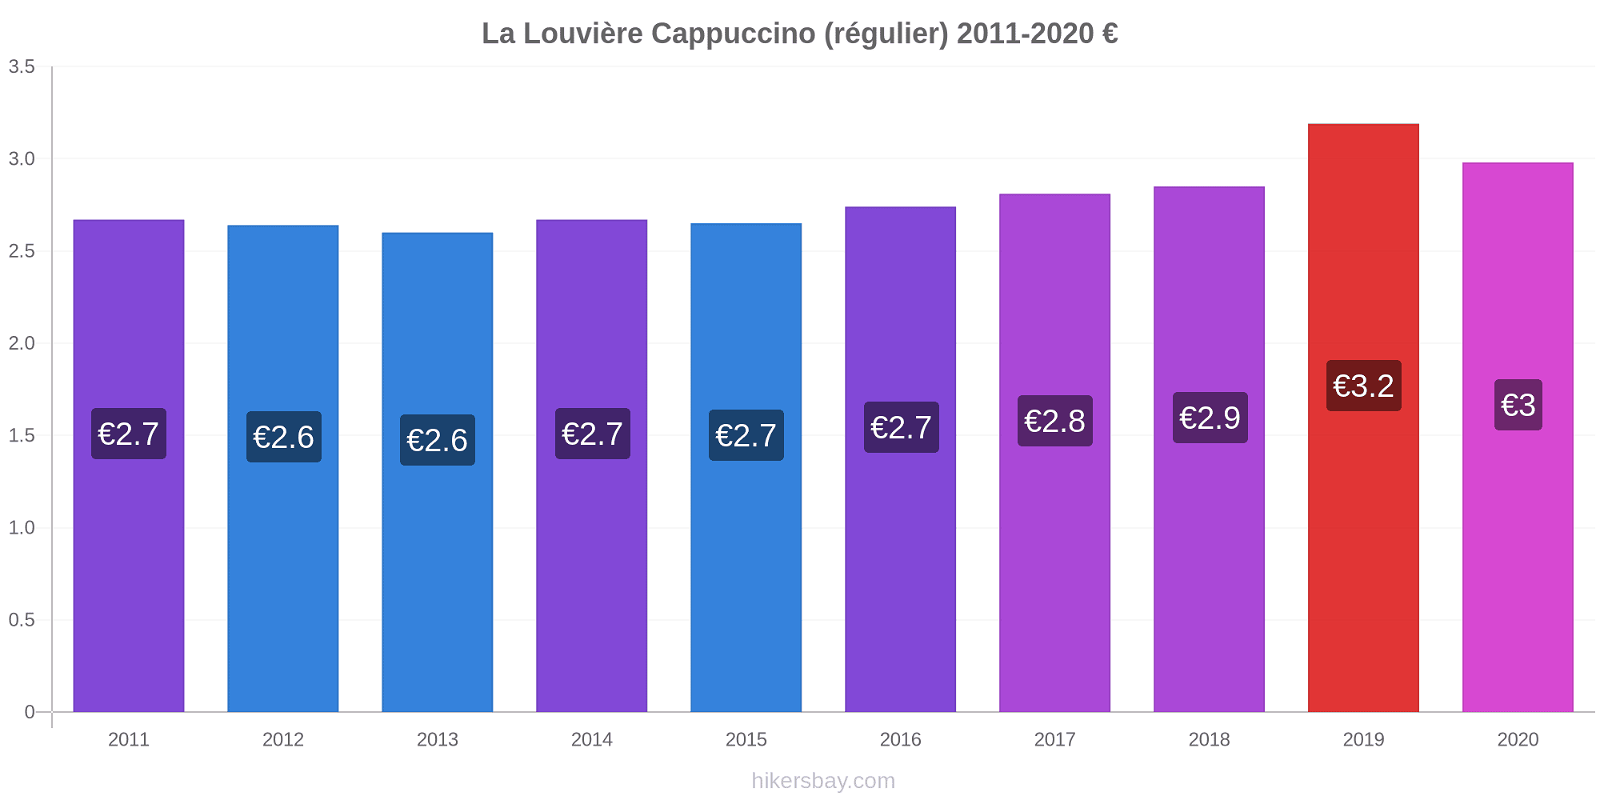 La Louvière changements de prix Cappuccino (régulier) hikersbay.com